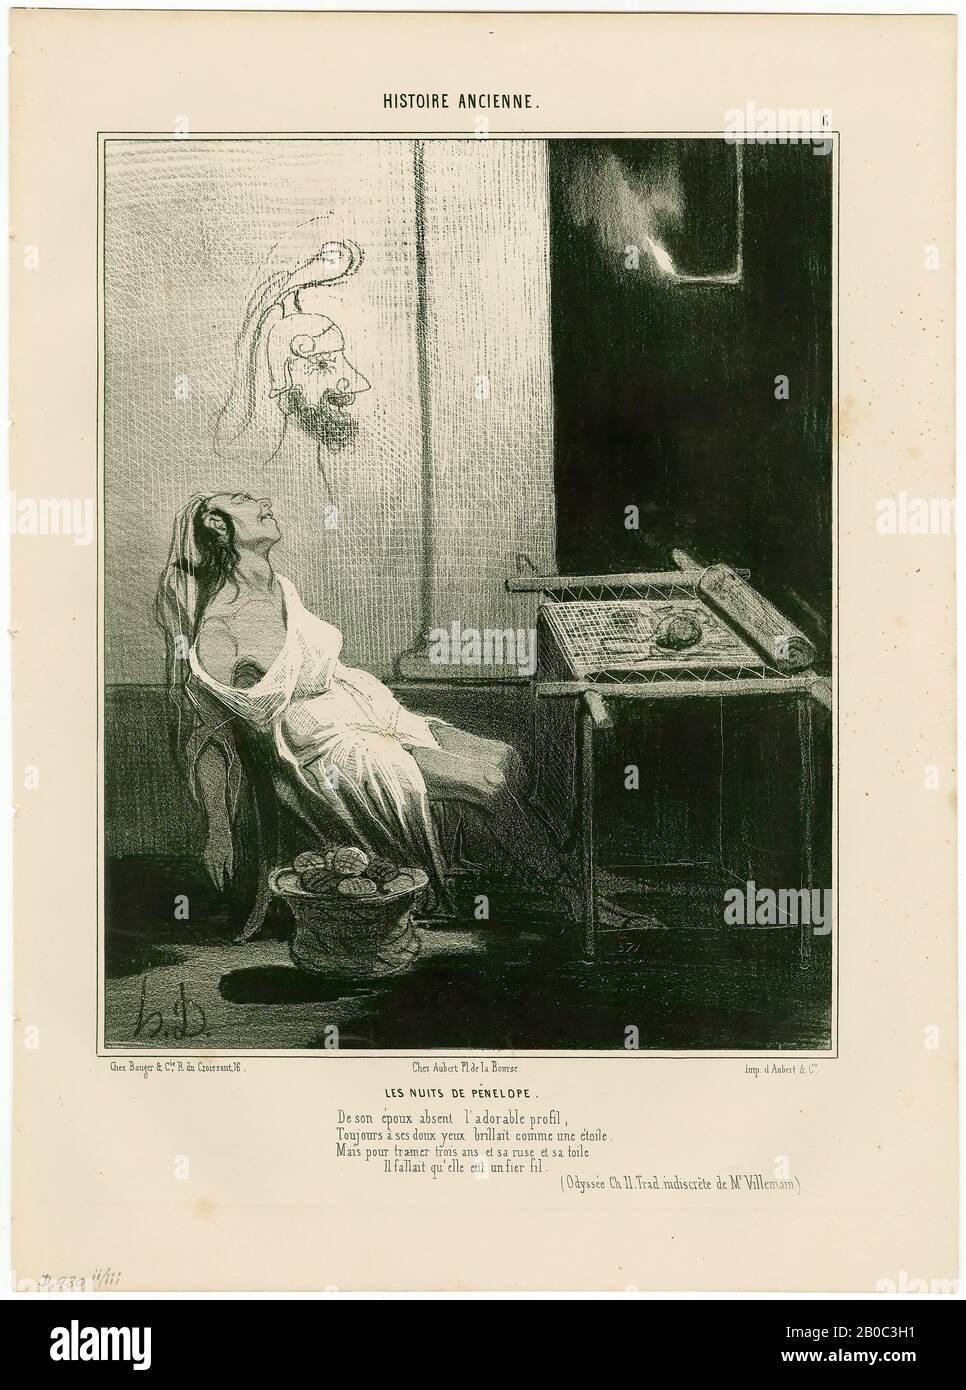 Honoré, Daumier, Les nuits de Pénélope (Histoire ancienne, 6), 1842, lithograph on cream wove paper, 13 1/8 in. x 9 3/4 in. (33.34 cm x 24.77 cm Stock Photo